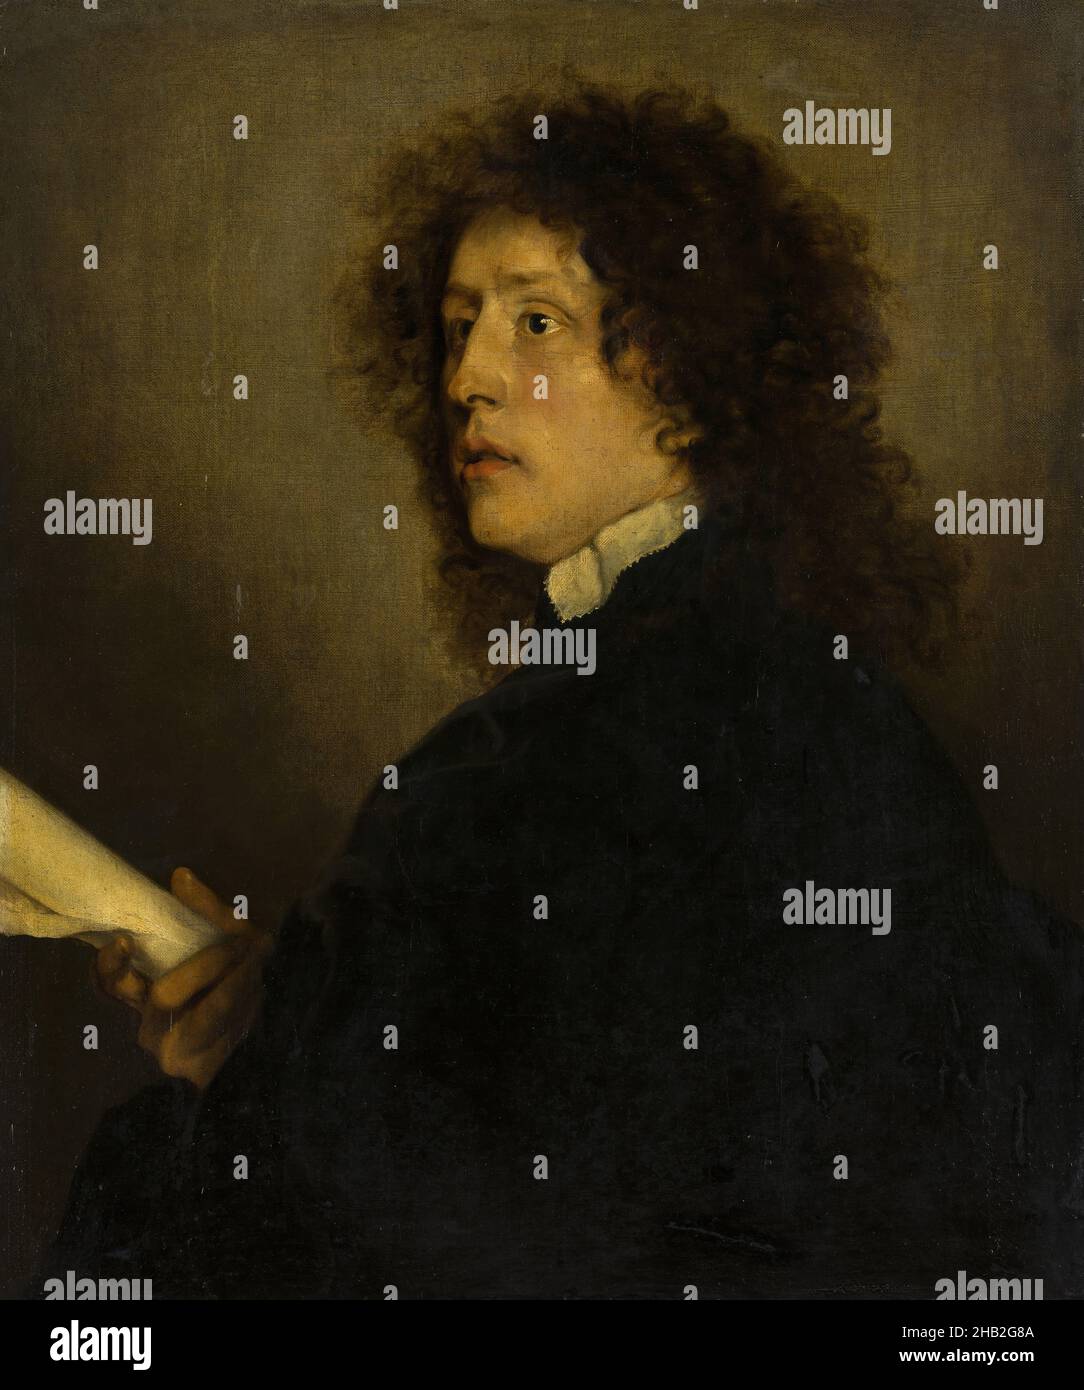 Portrait of a man, Adriaen Hanneman, c. 1637 Stock Photo